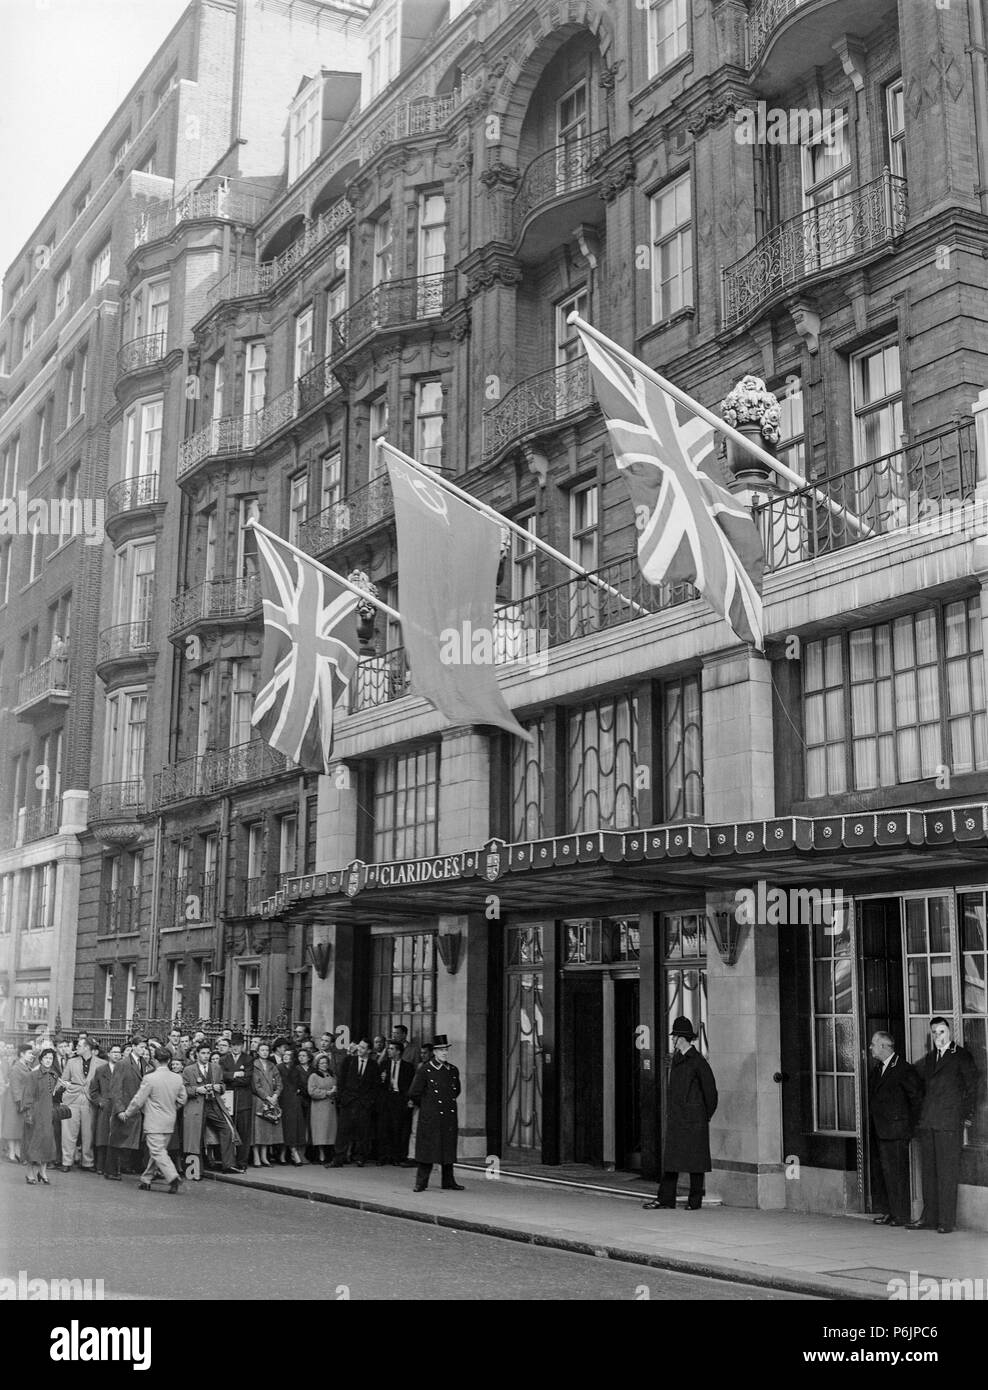 Die Vorderseite der Claridges Hotel in London während der fünfziger Jahre. Mitglieder der öffentlichkeit und Kameraleute warten auf die Ankunft von einer berühmten Person. Stockfoto